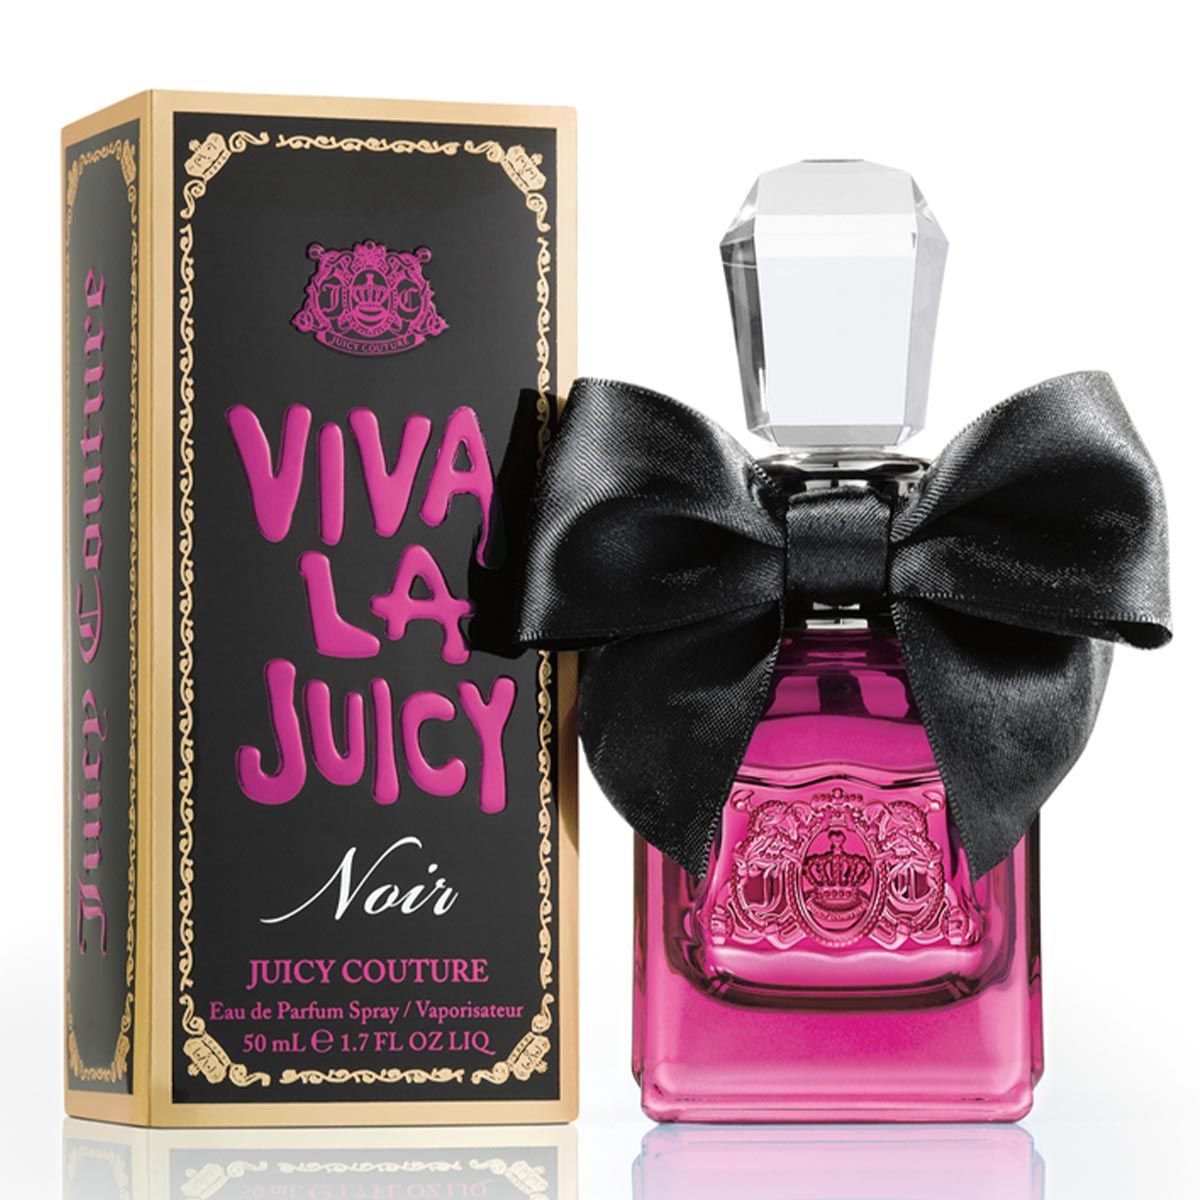  Juicy Couture Viva La Juicy Noir 